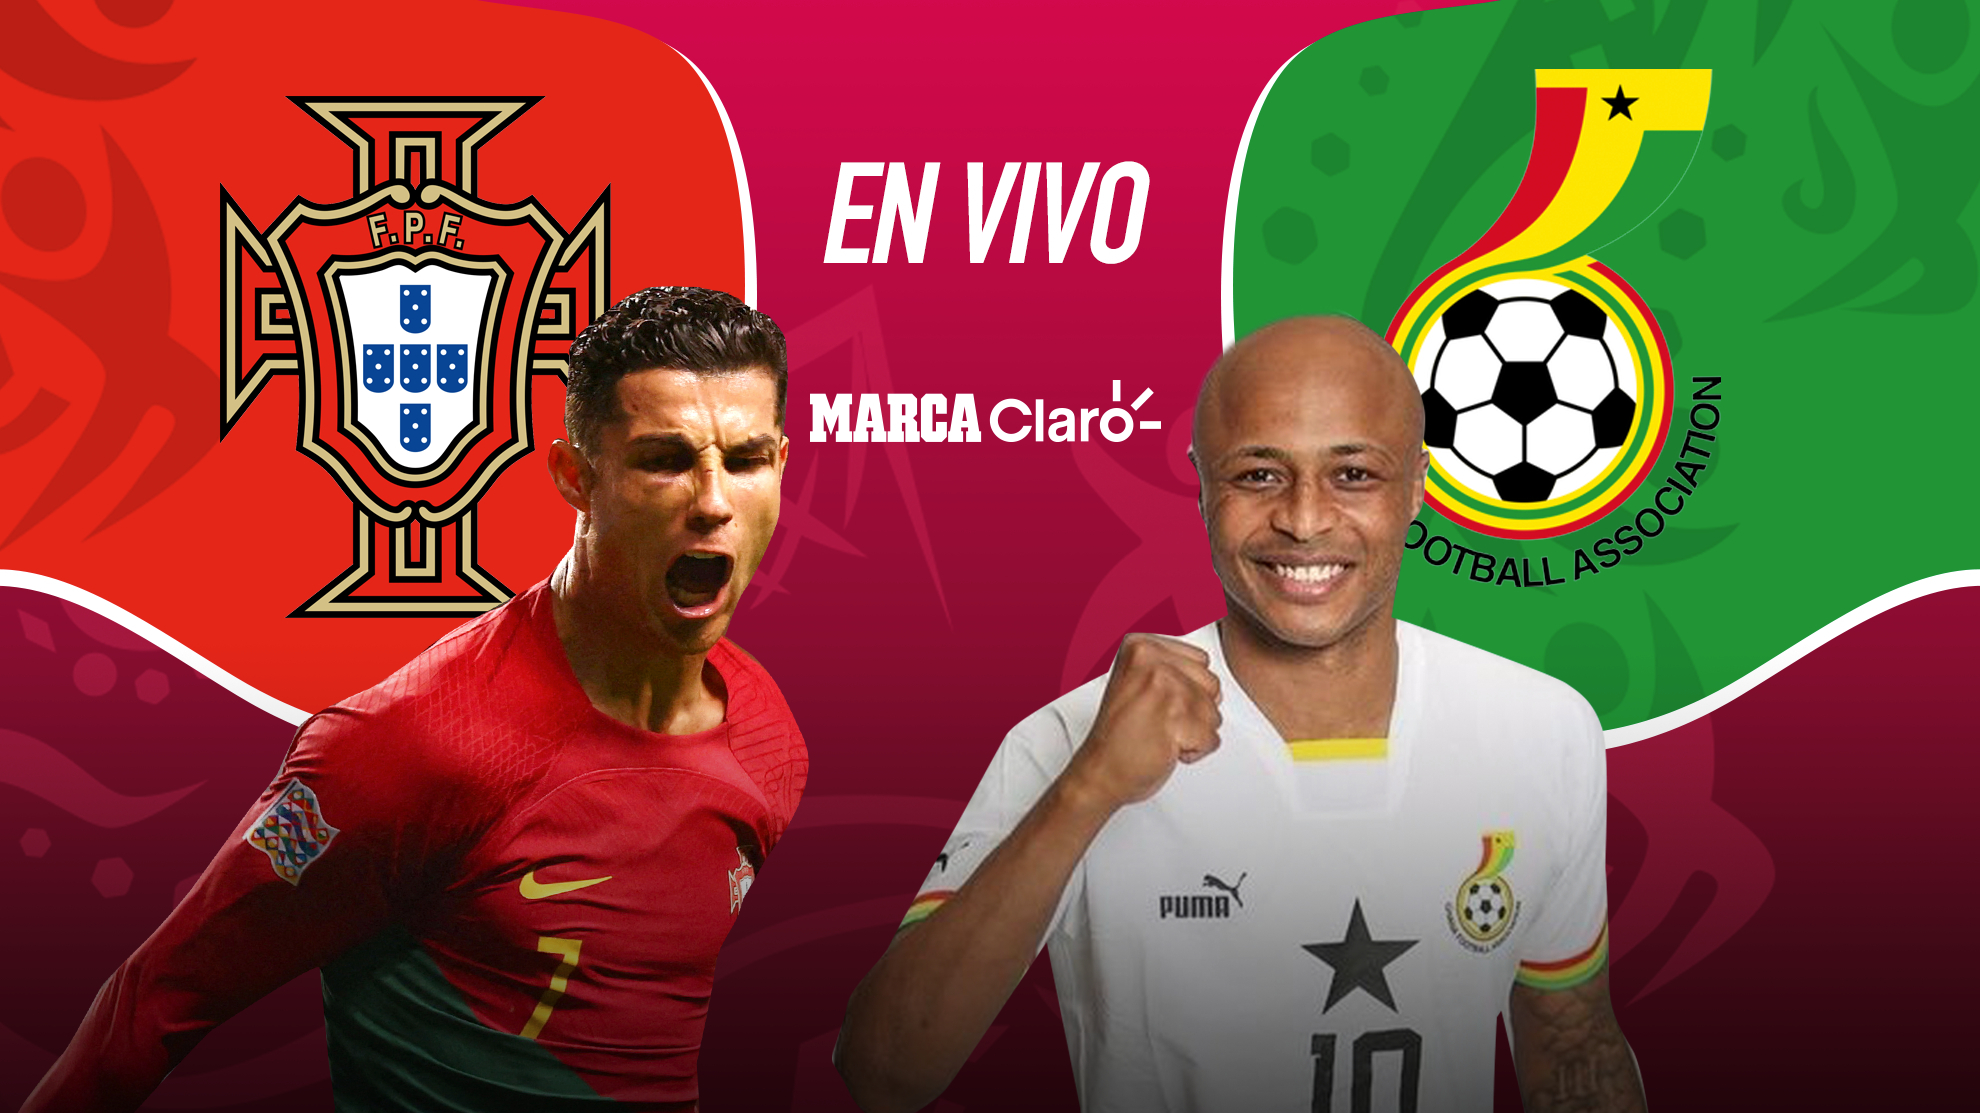 Partidos Portugal 3-2 Ghana, resumen y partido del Mundial Qatar 2022: Grupo H, fecha 1 | MARCA Claro